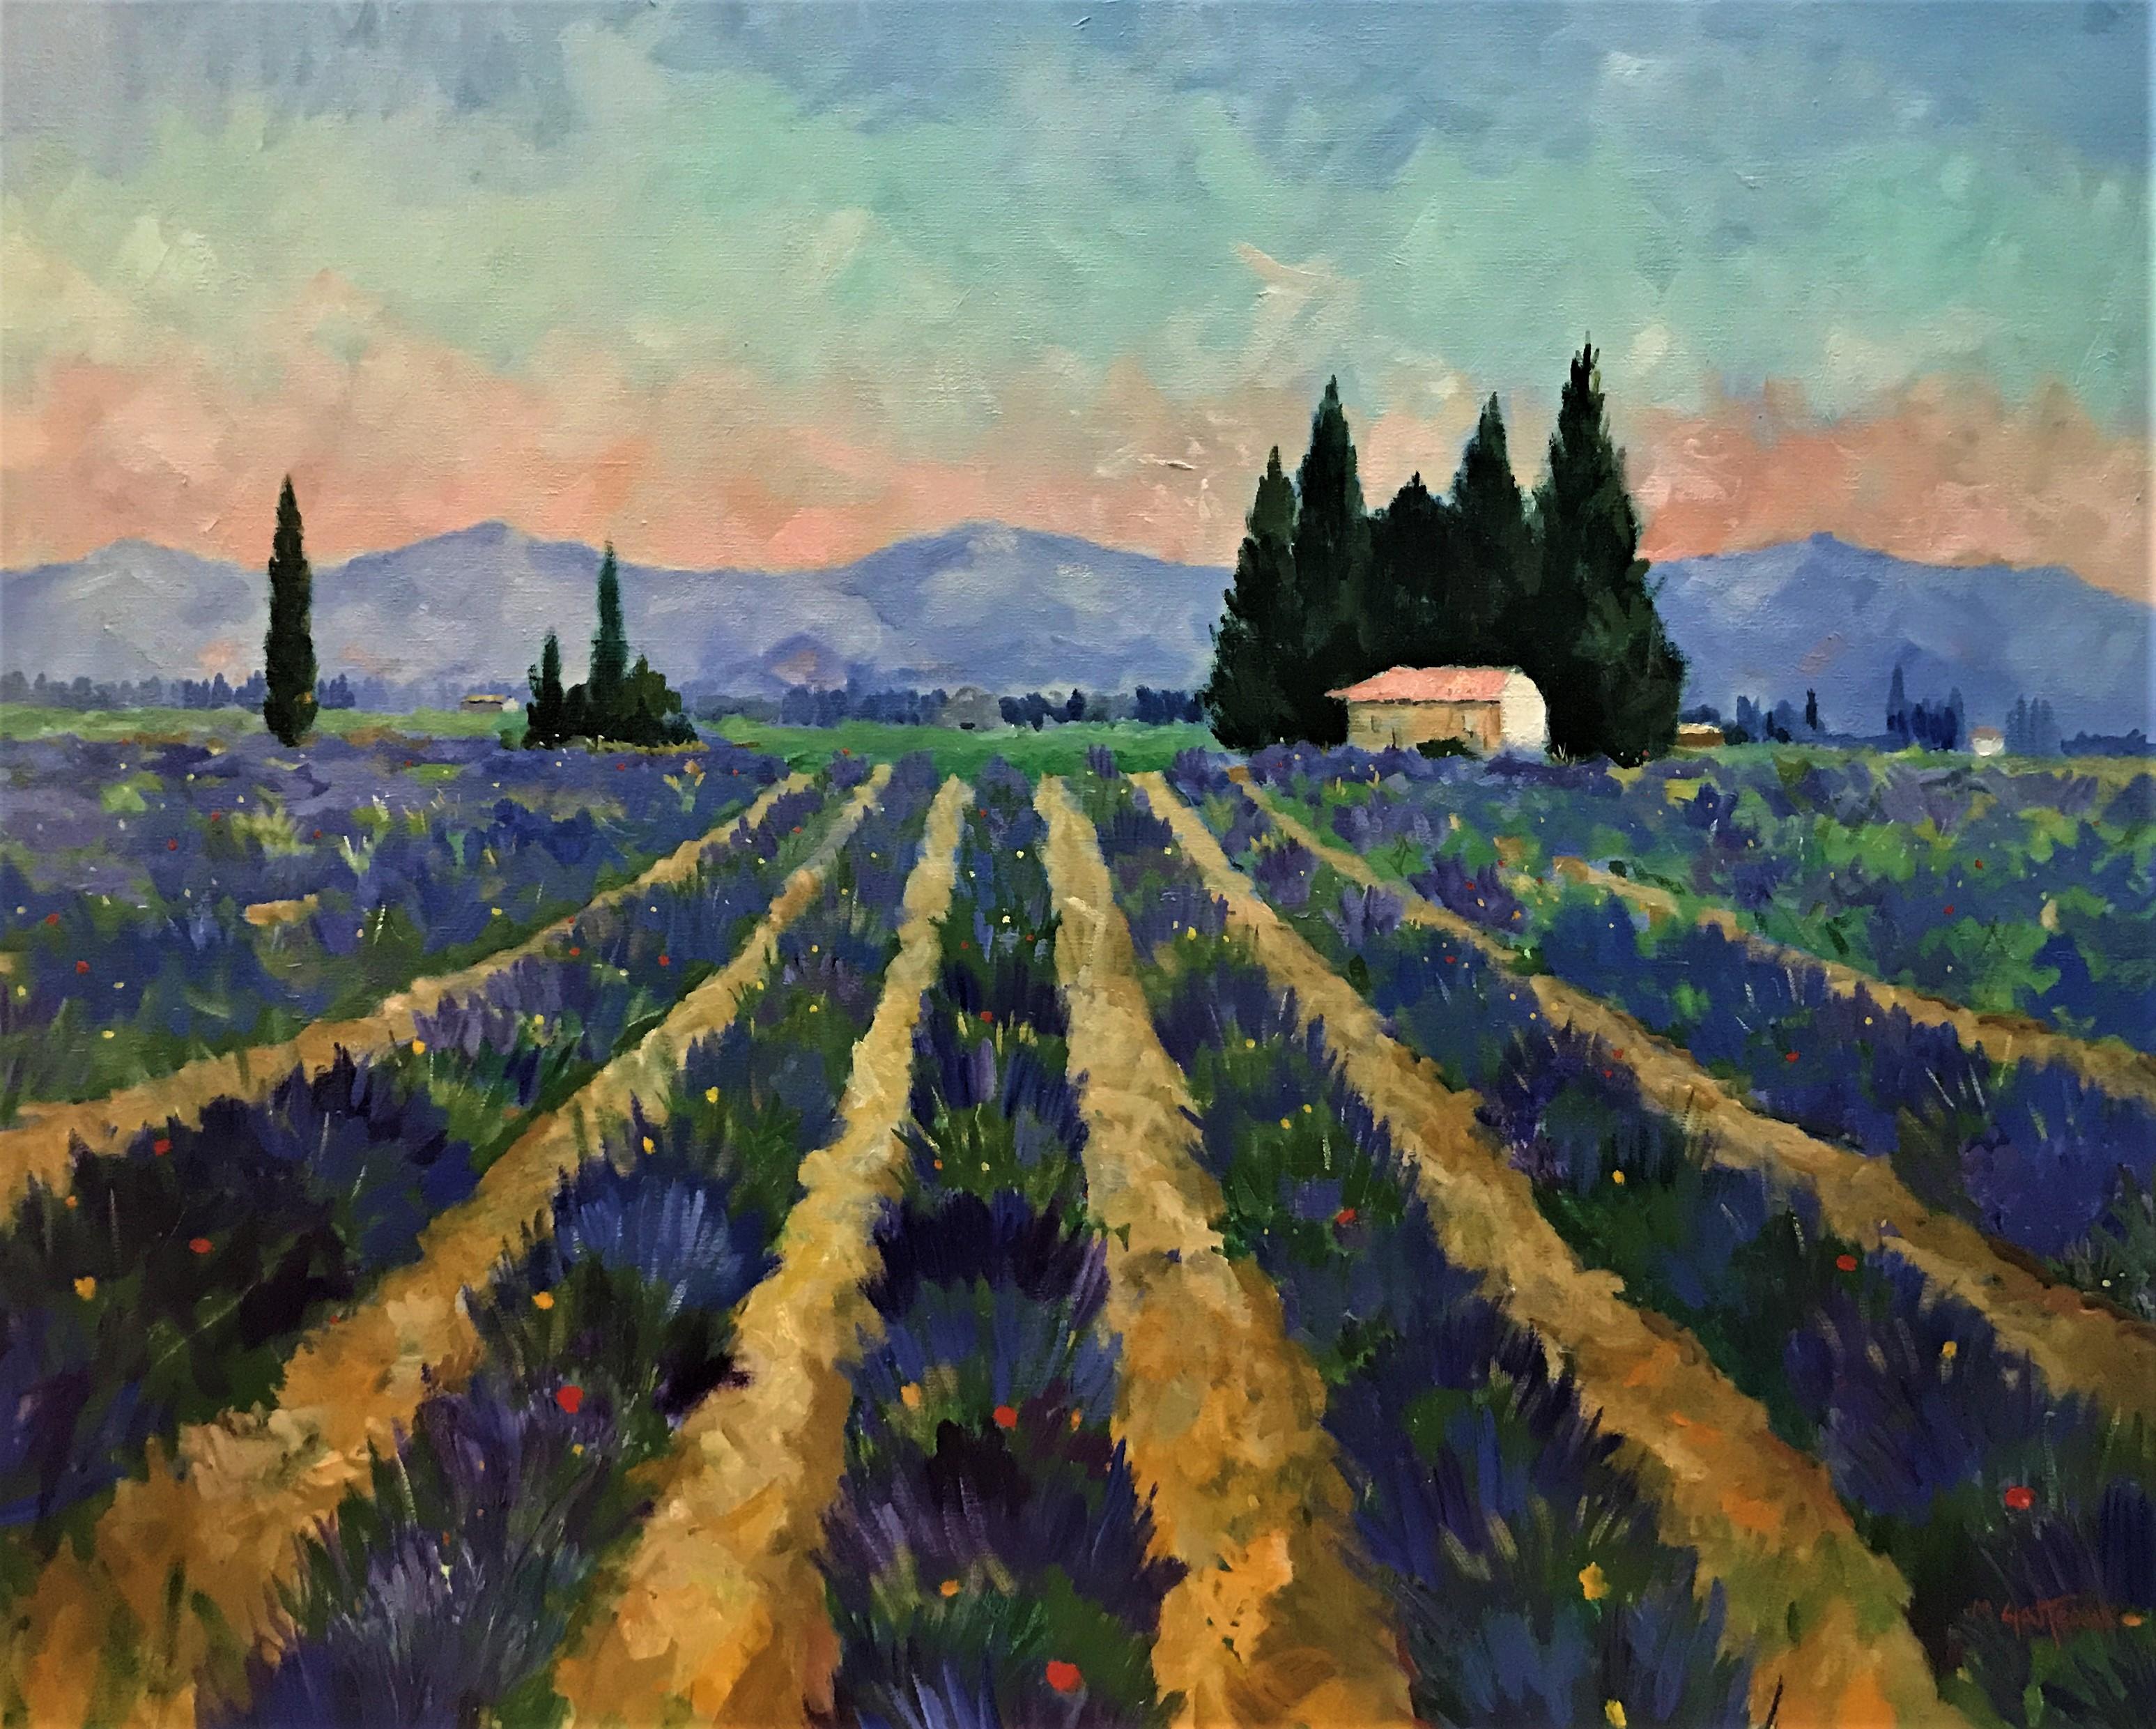 Marcel Gatteaux Landscape Painting - Lavender at Dusk, Provence, atmospheric evening landscape, original oil/canvas